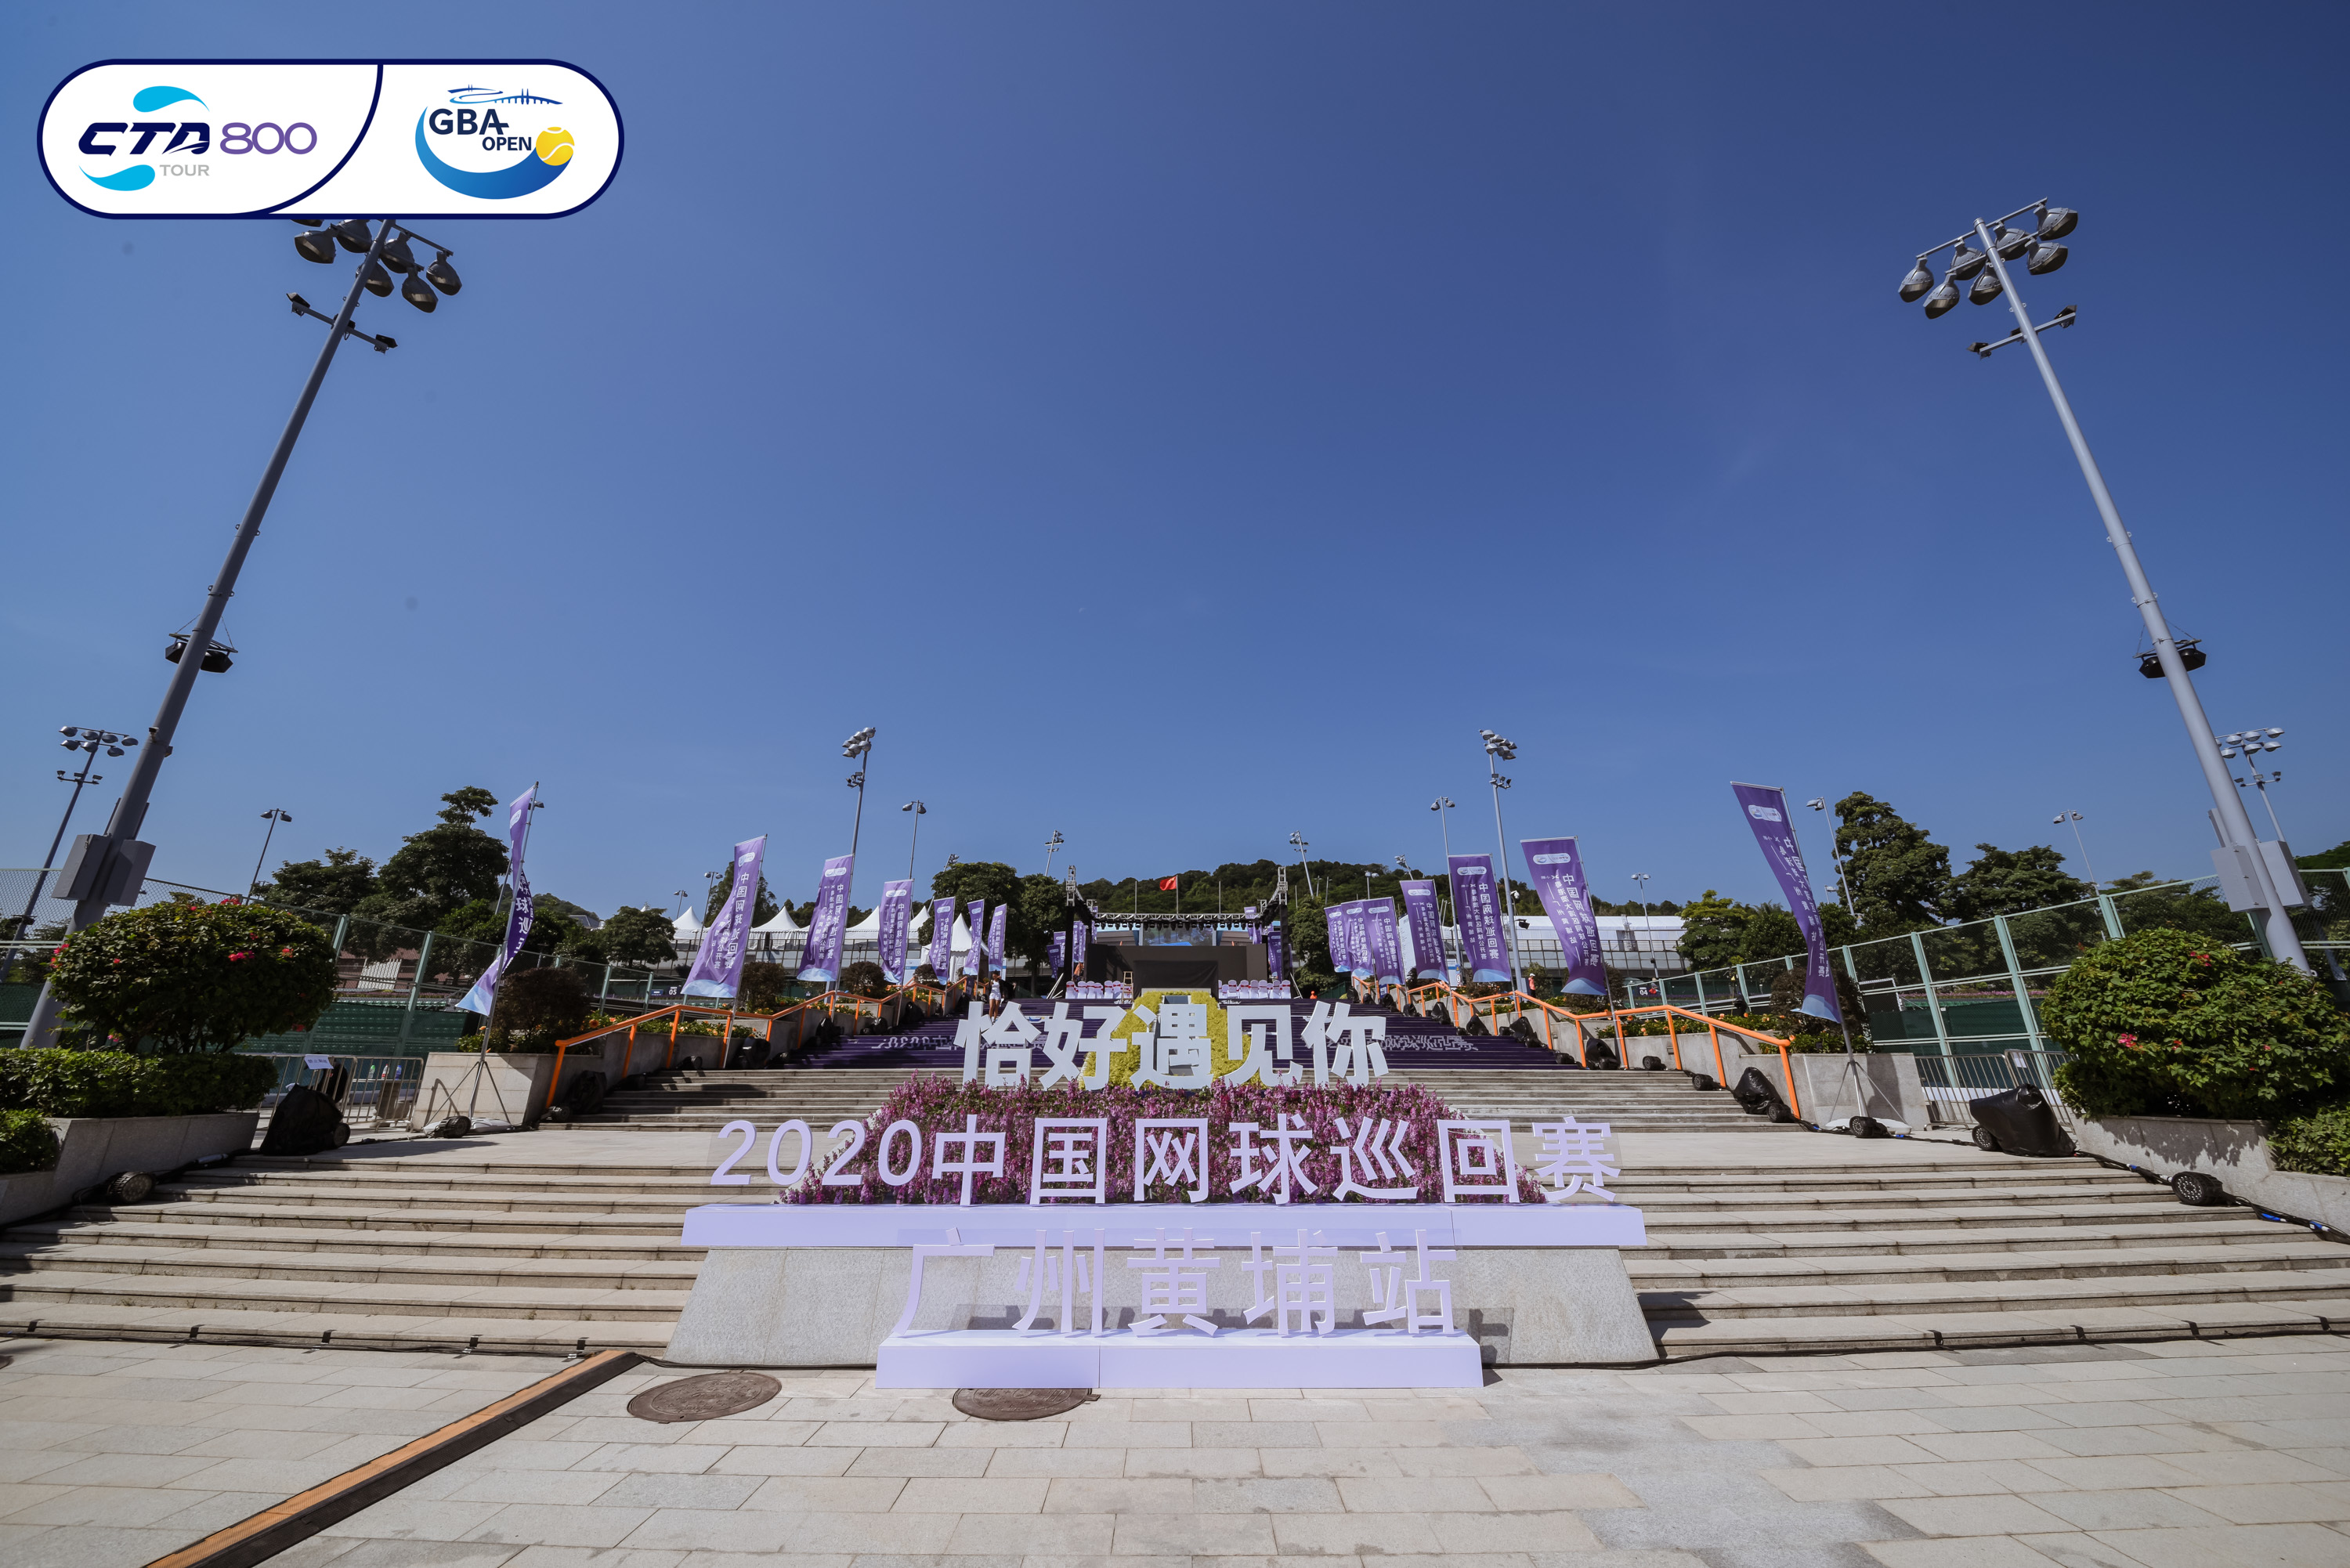 球场事·恰好时|2020中国网球巡回赛CTA800广州站落幕